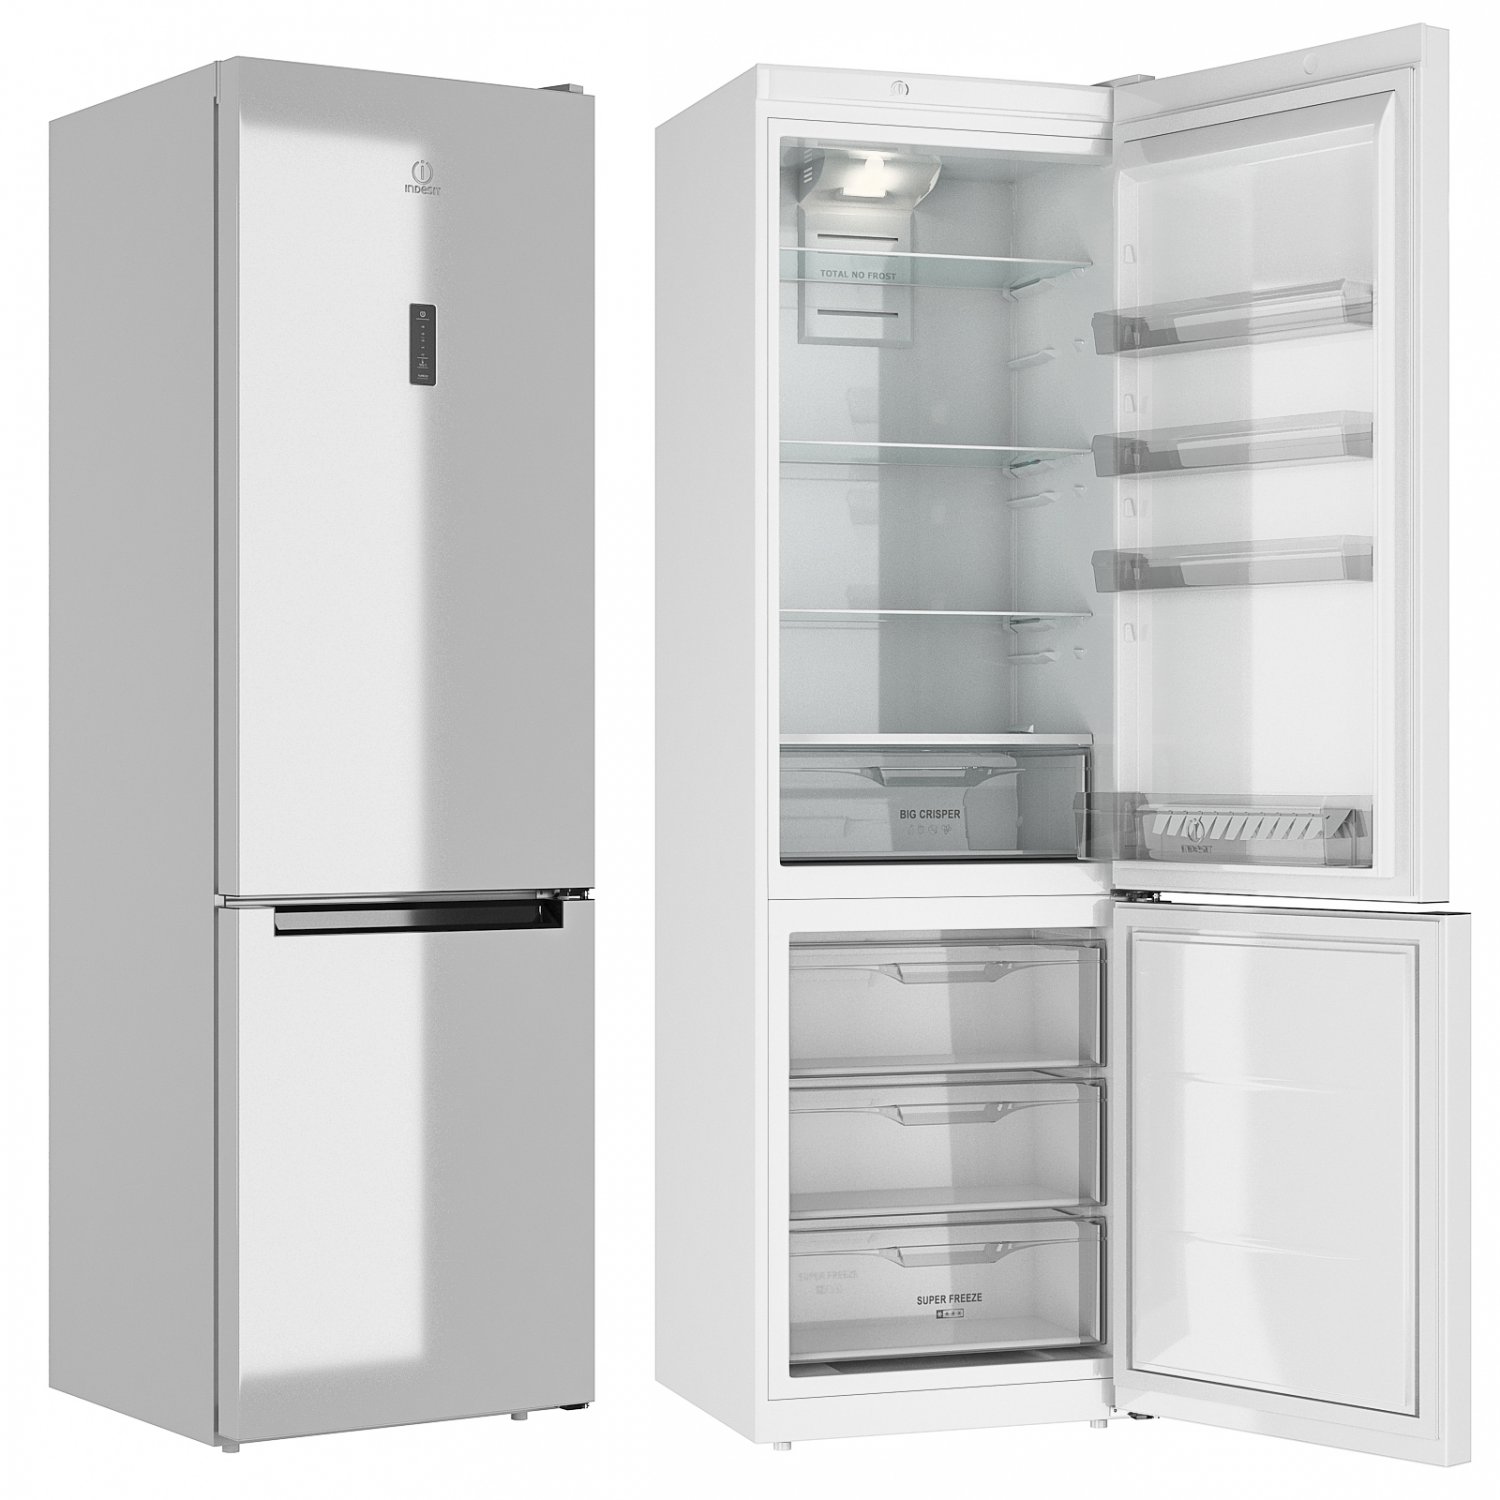 Холодильник индезит эльдорадо. Холодильник Индезит 5200w.